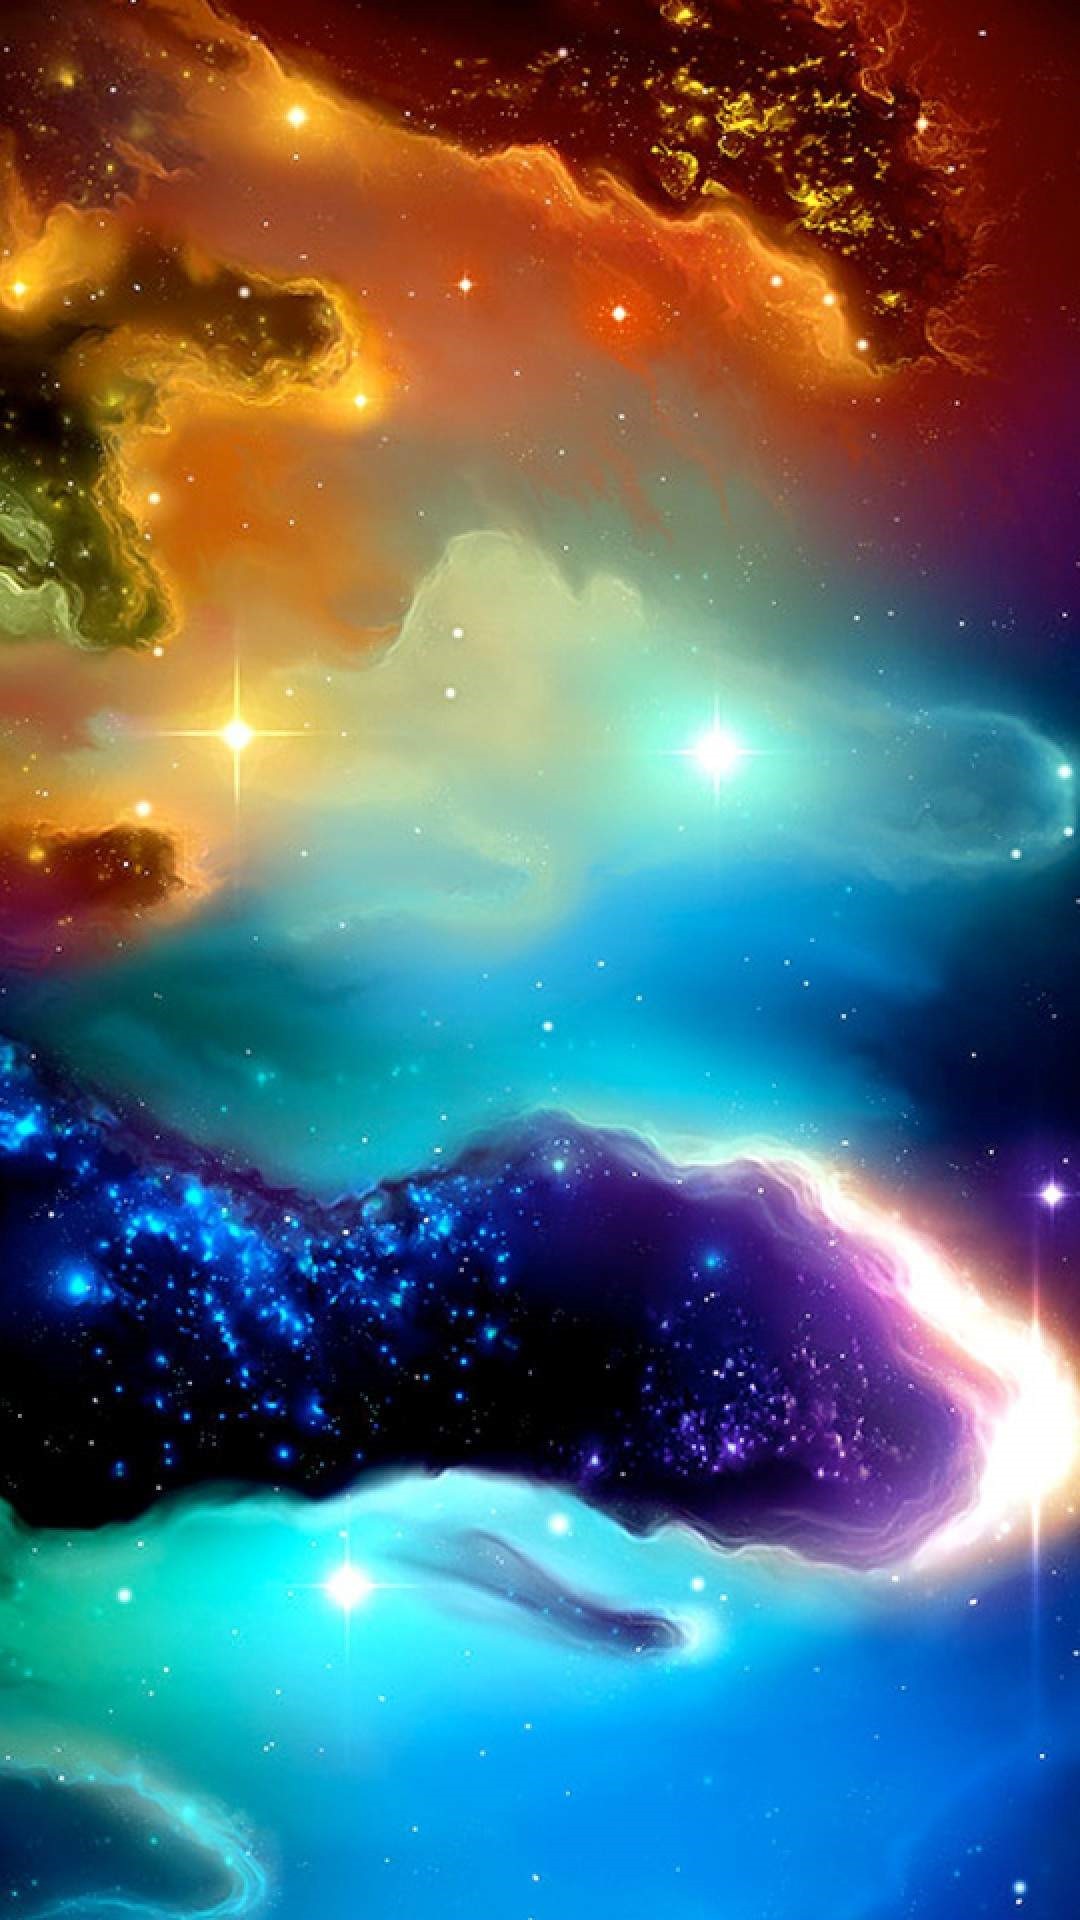 gambar wallpaper whatsapp,himmel,natur,platz,atmosphäre,astronomisches objekt